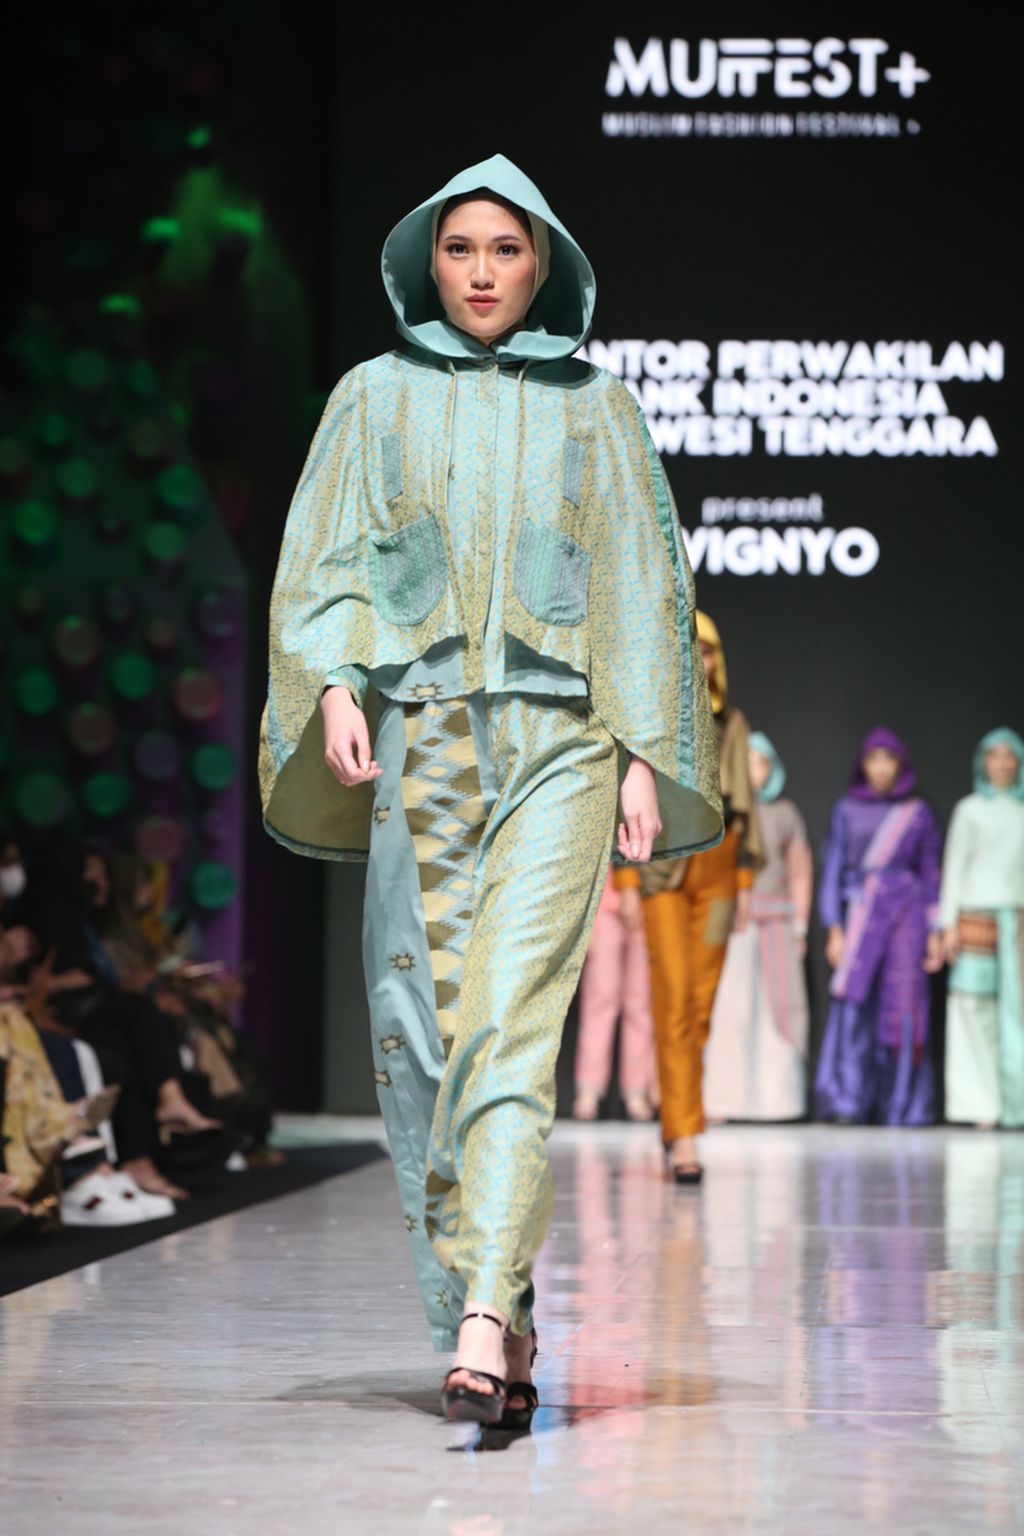 Karya perancang Wignyo di ajang Muslim Fashion Festival (Muffest) 2023 di Jakarta, awal Maret 2023. 